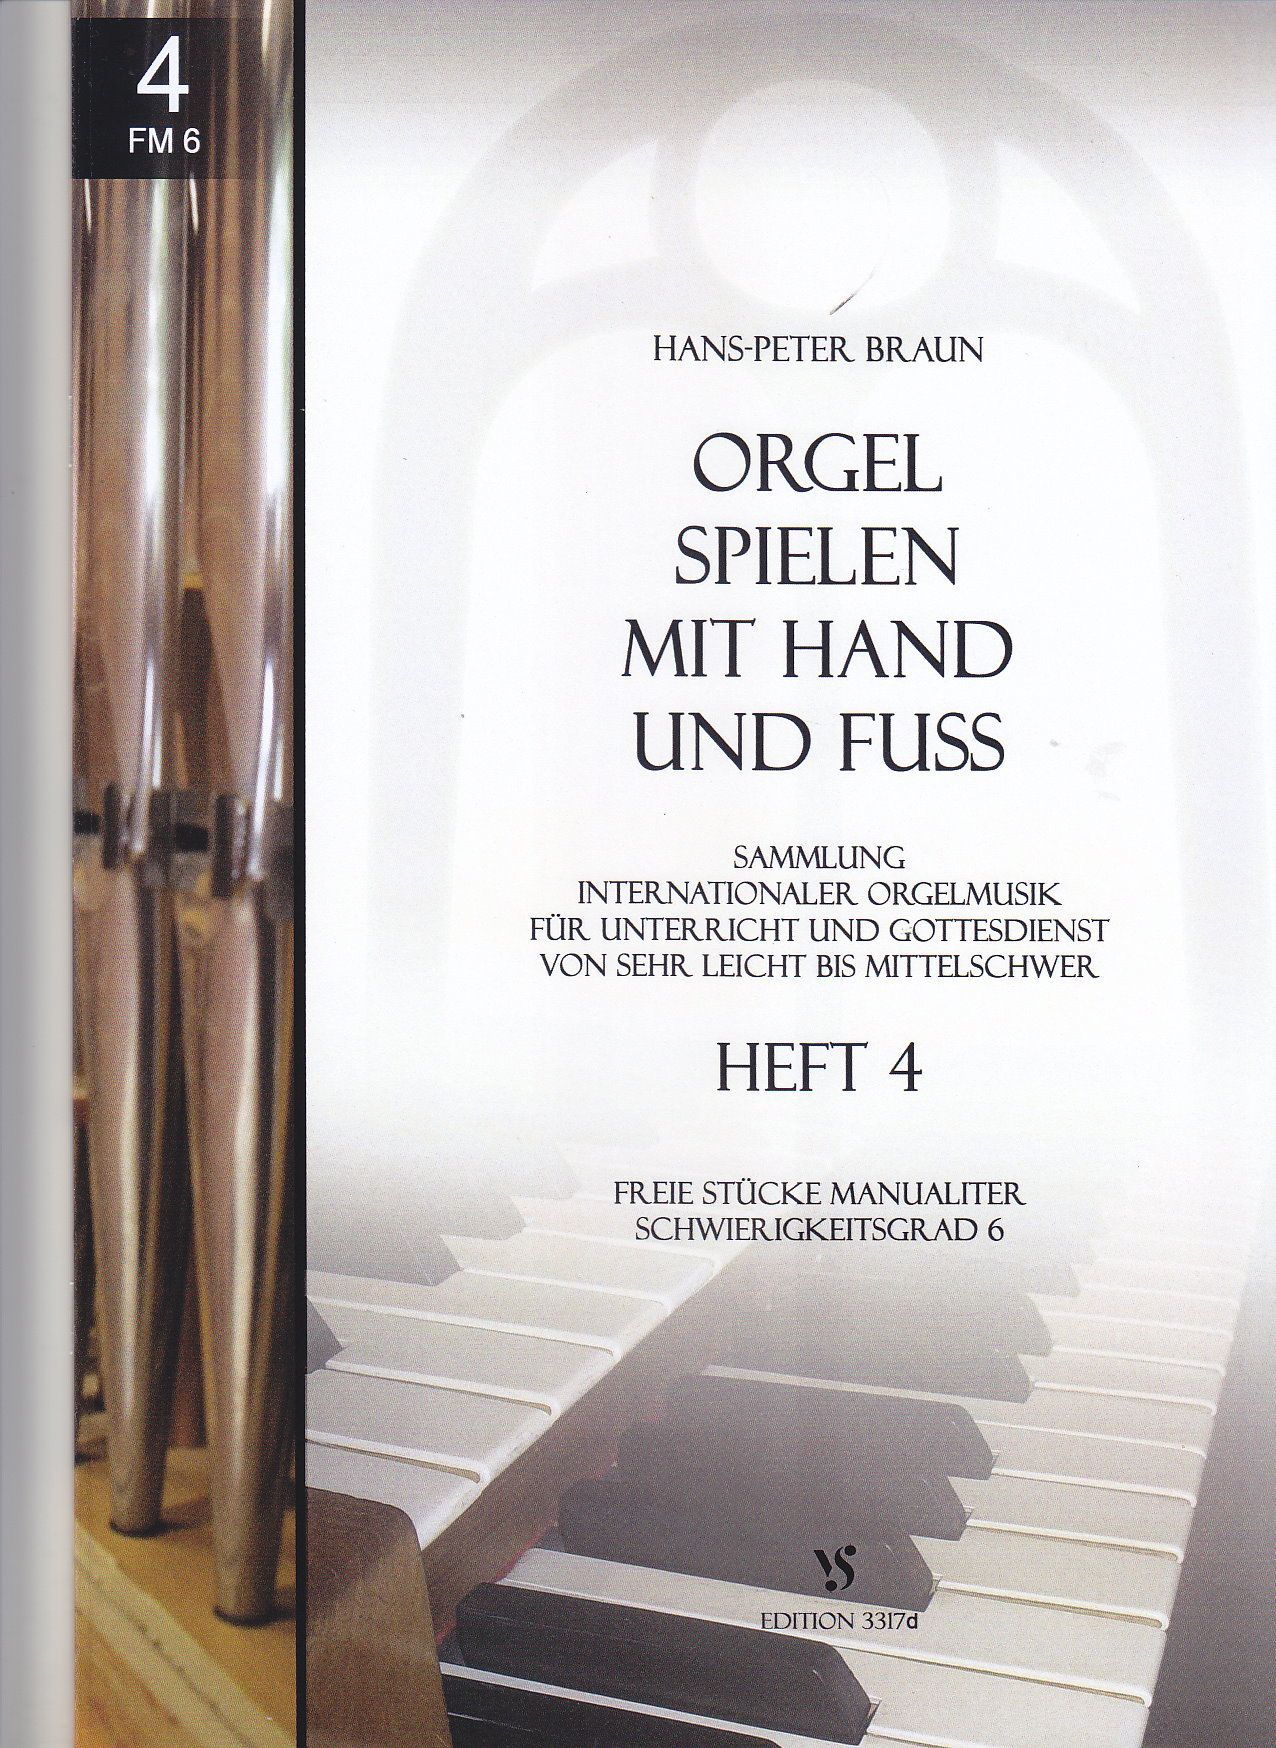 Noten Orgel spielen mit Hand und Fuss 4 Strube 3317d Hans Peter Braun manualiter  - Onlineshop Musikhaus Markstein